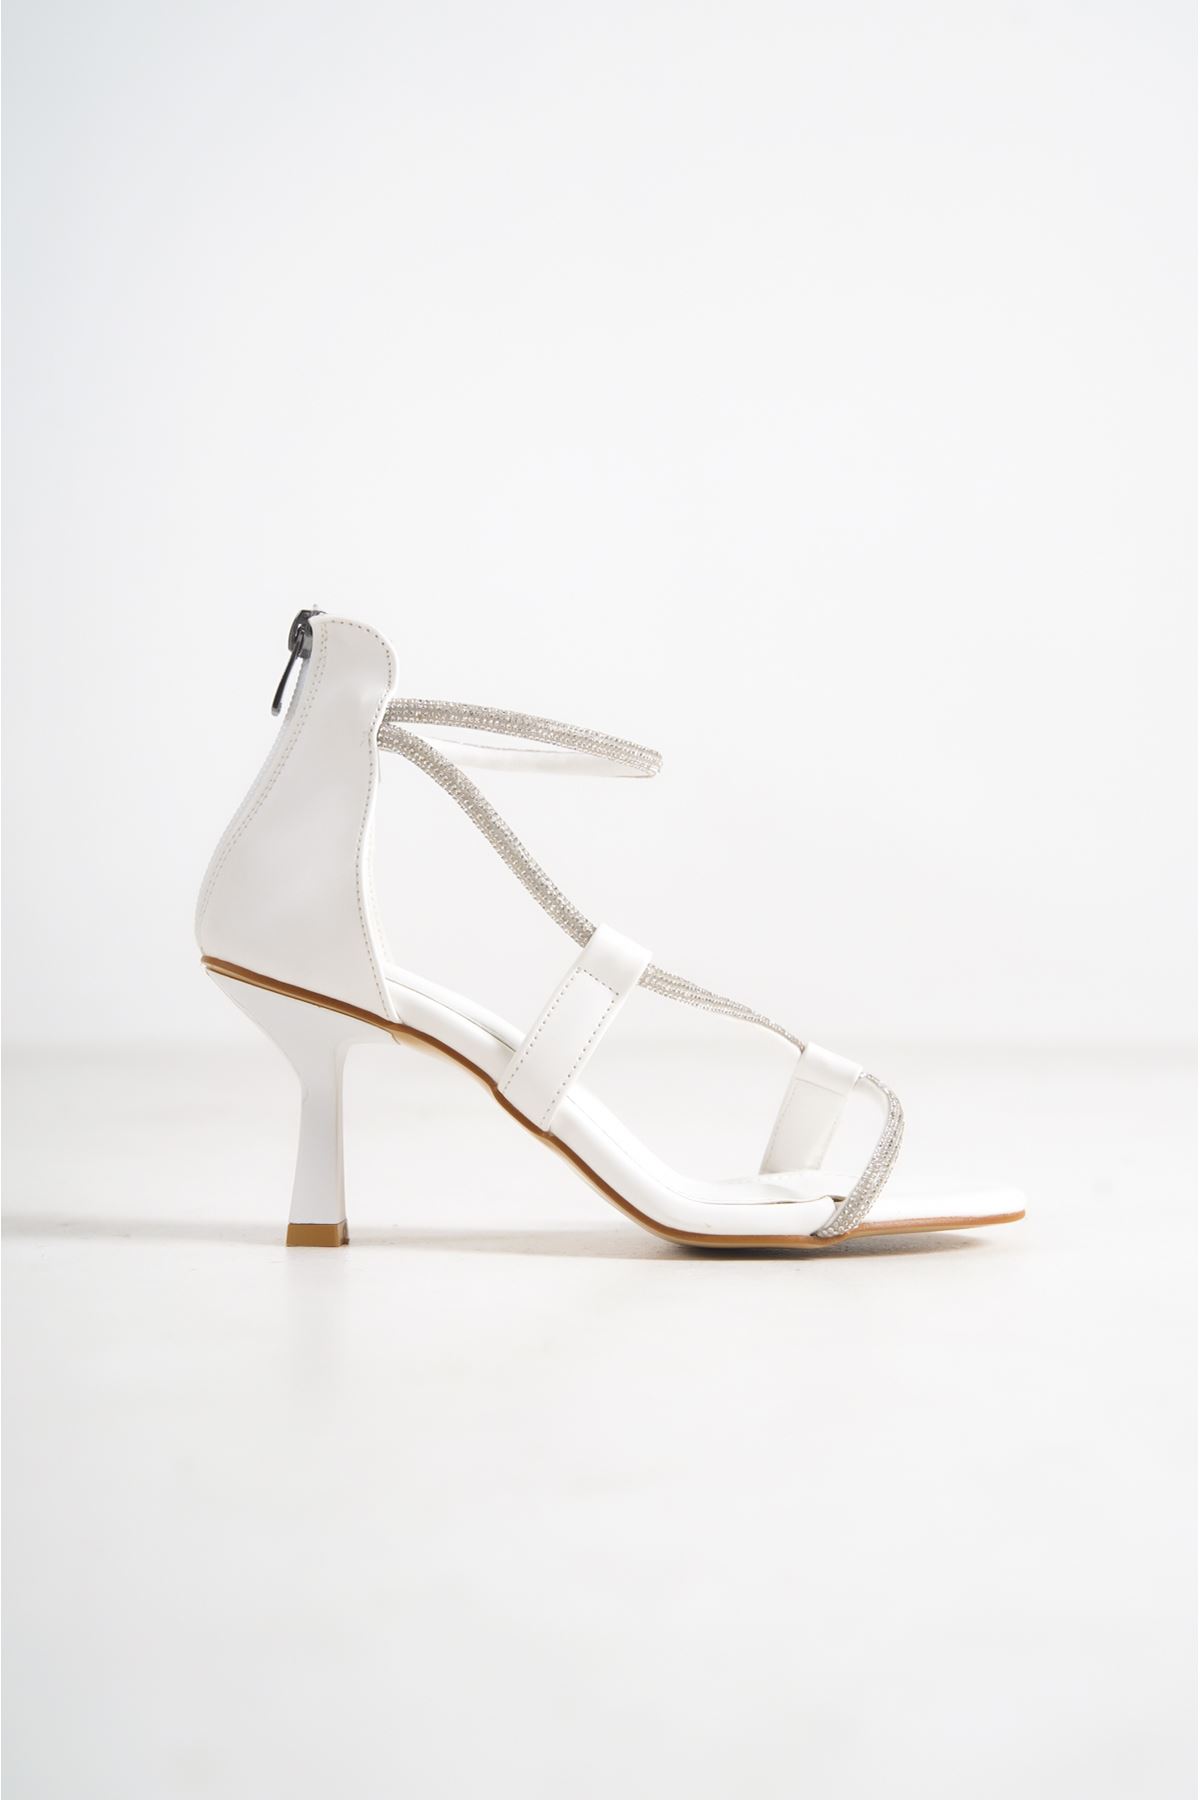 Marry Beyaz Taşlı Topuklu Mat Deri Kadın Ayakkabı